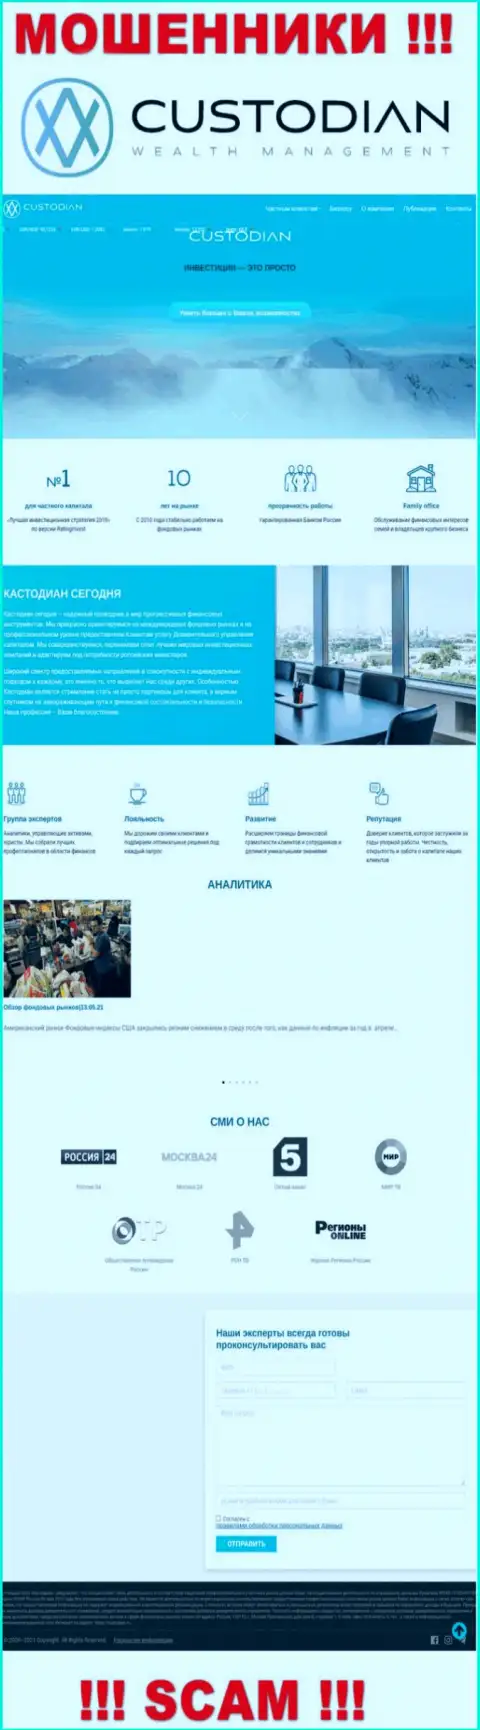 Скрин официального онлайн-ресурса противозаконно действующей компании Кустодиан